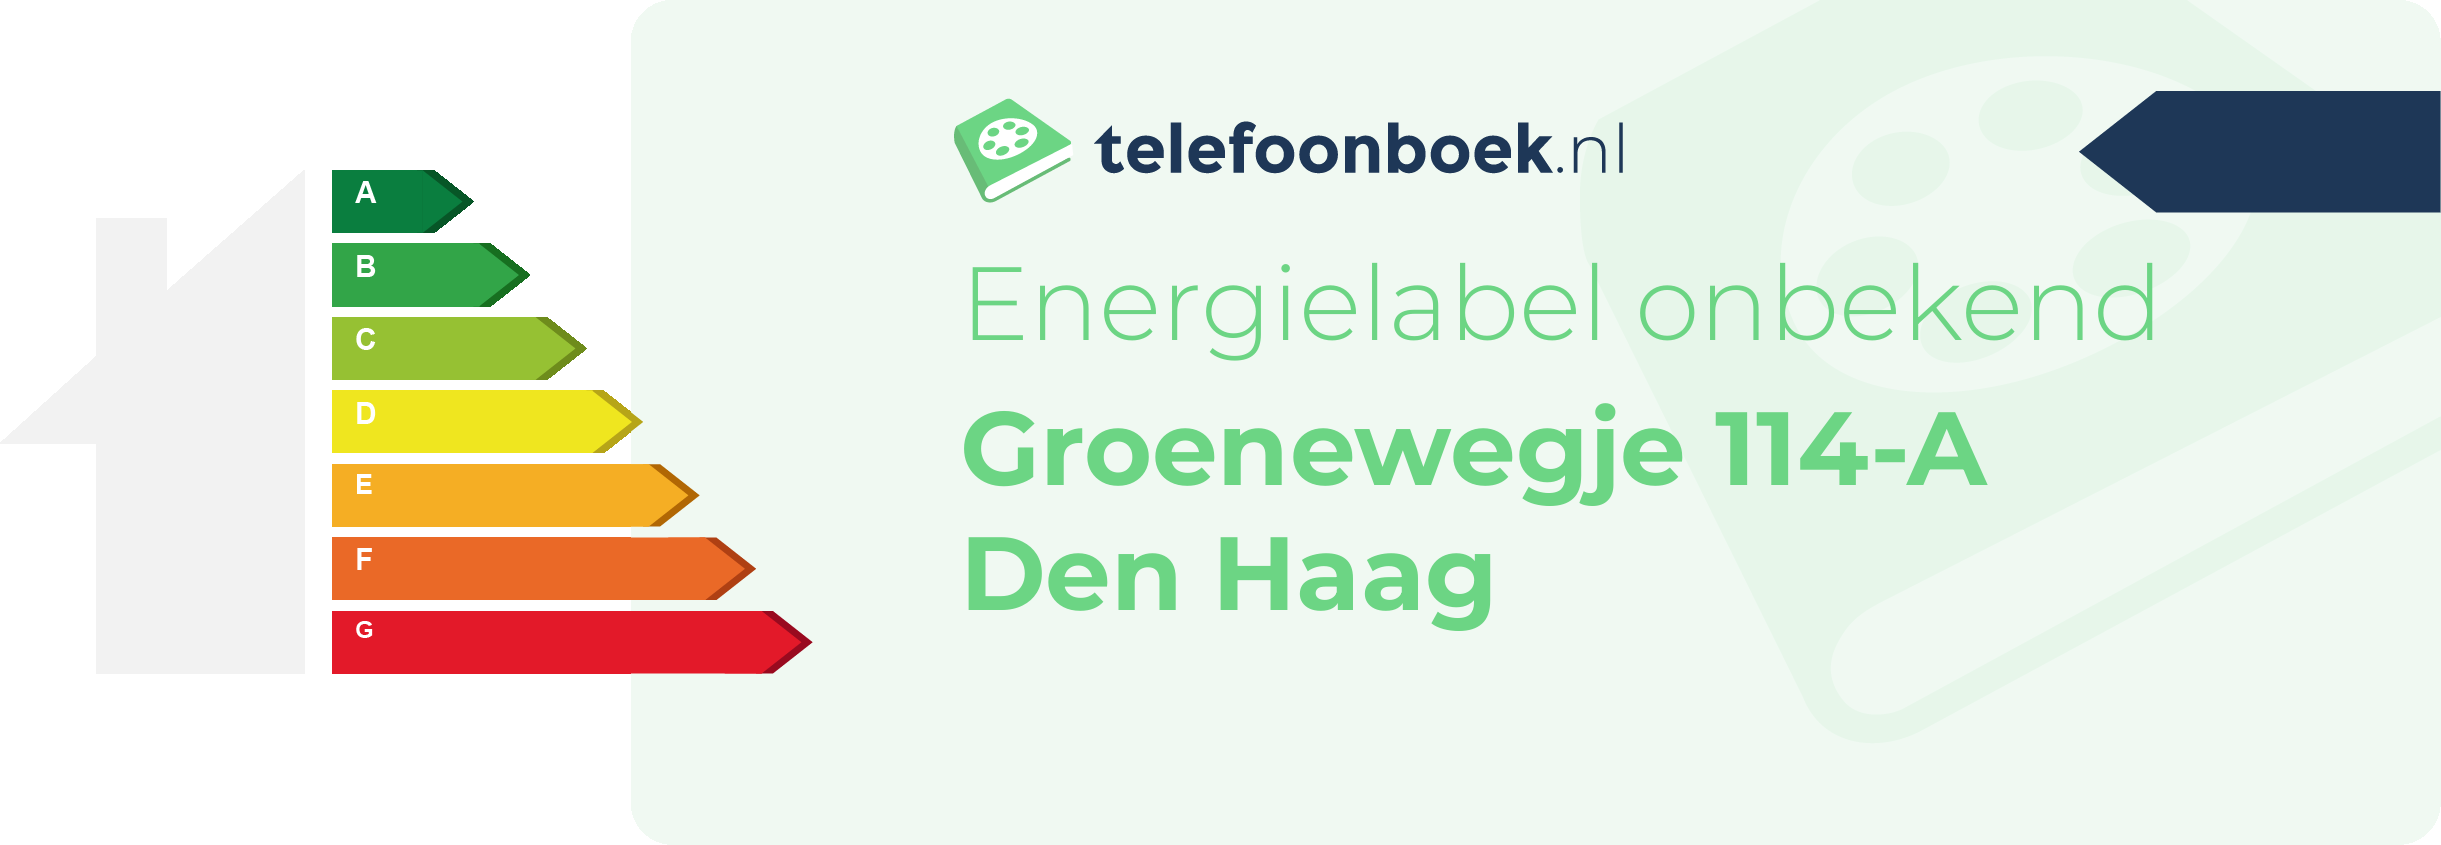 Energielabel Groenewegje 114-A Den Haag